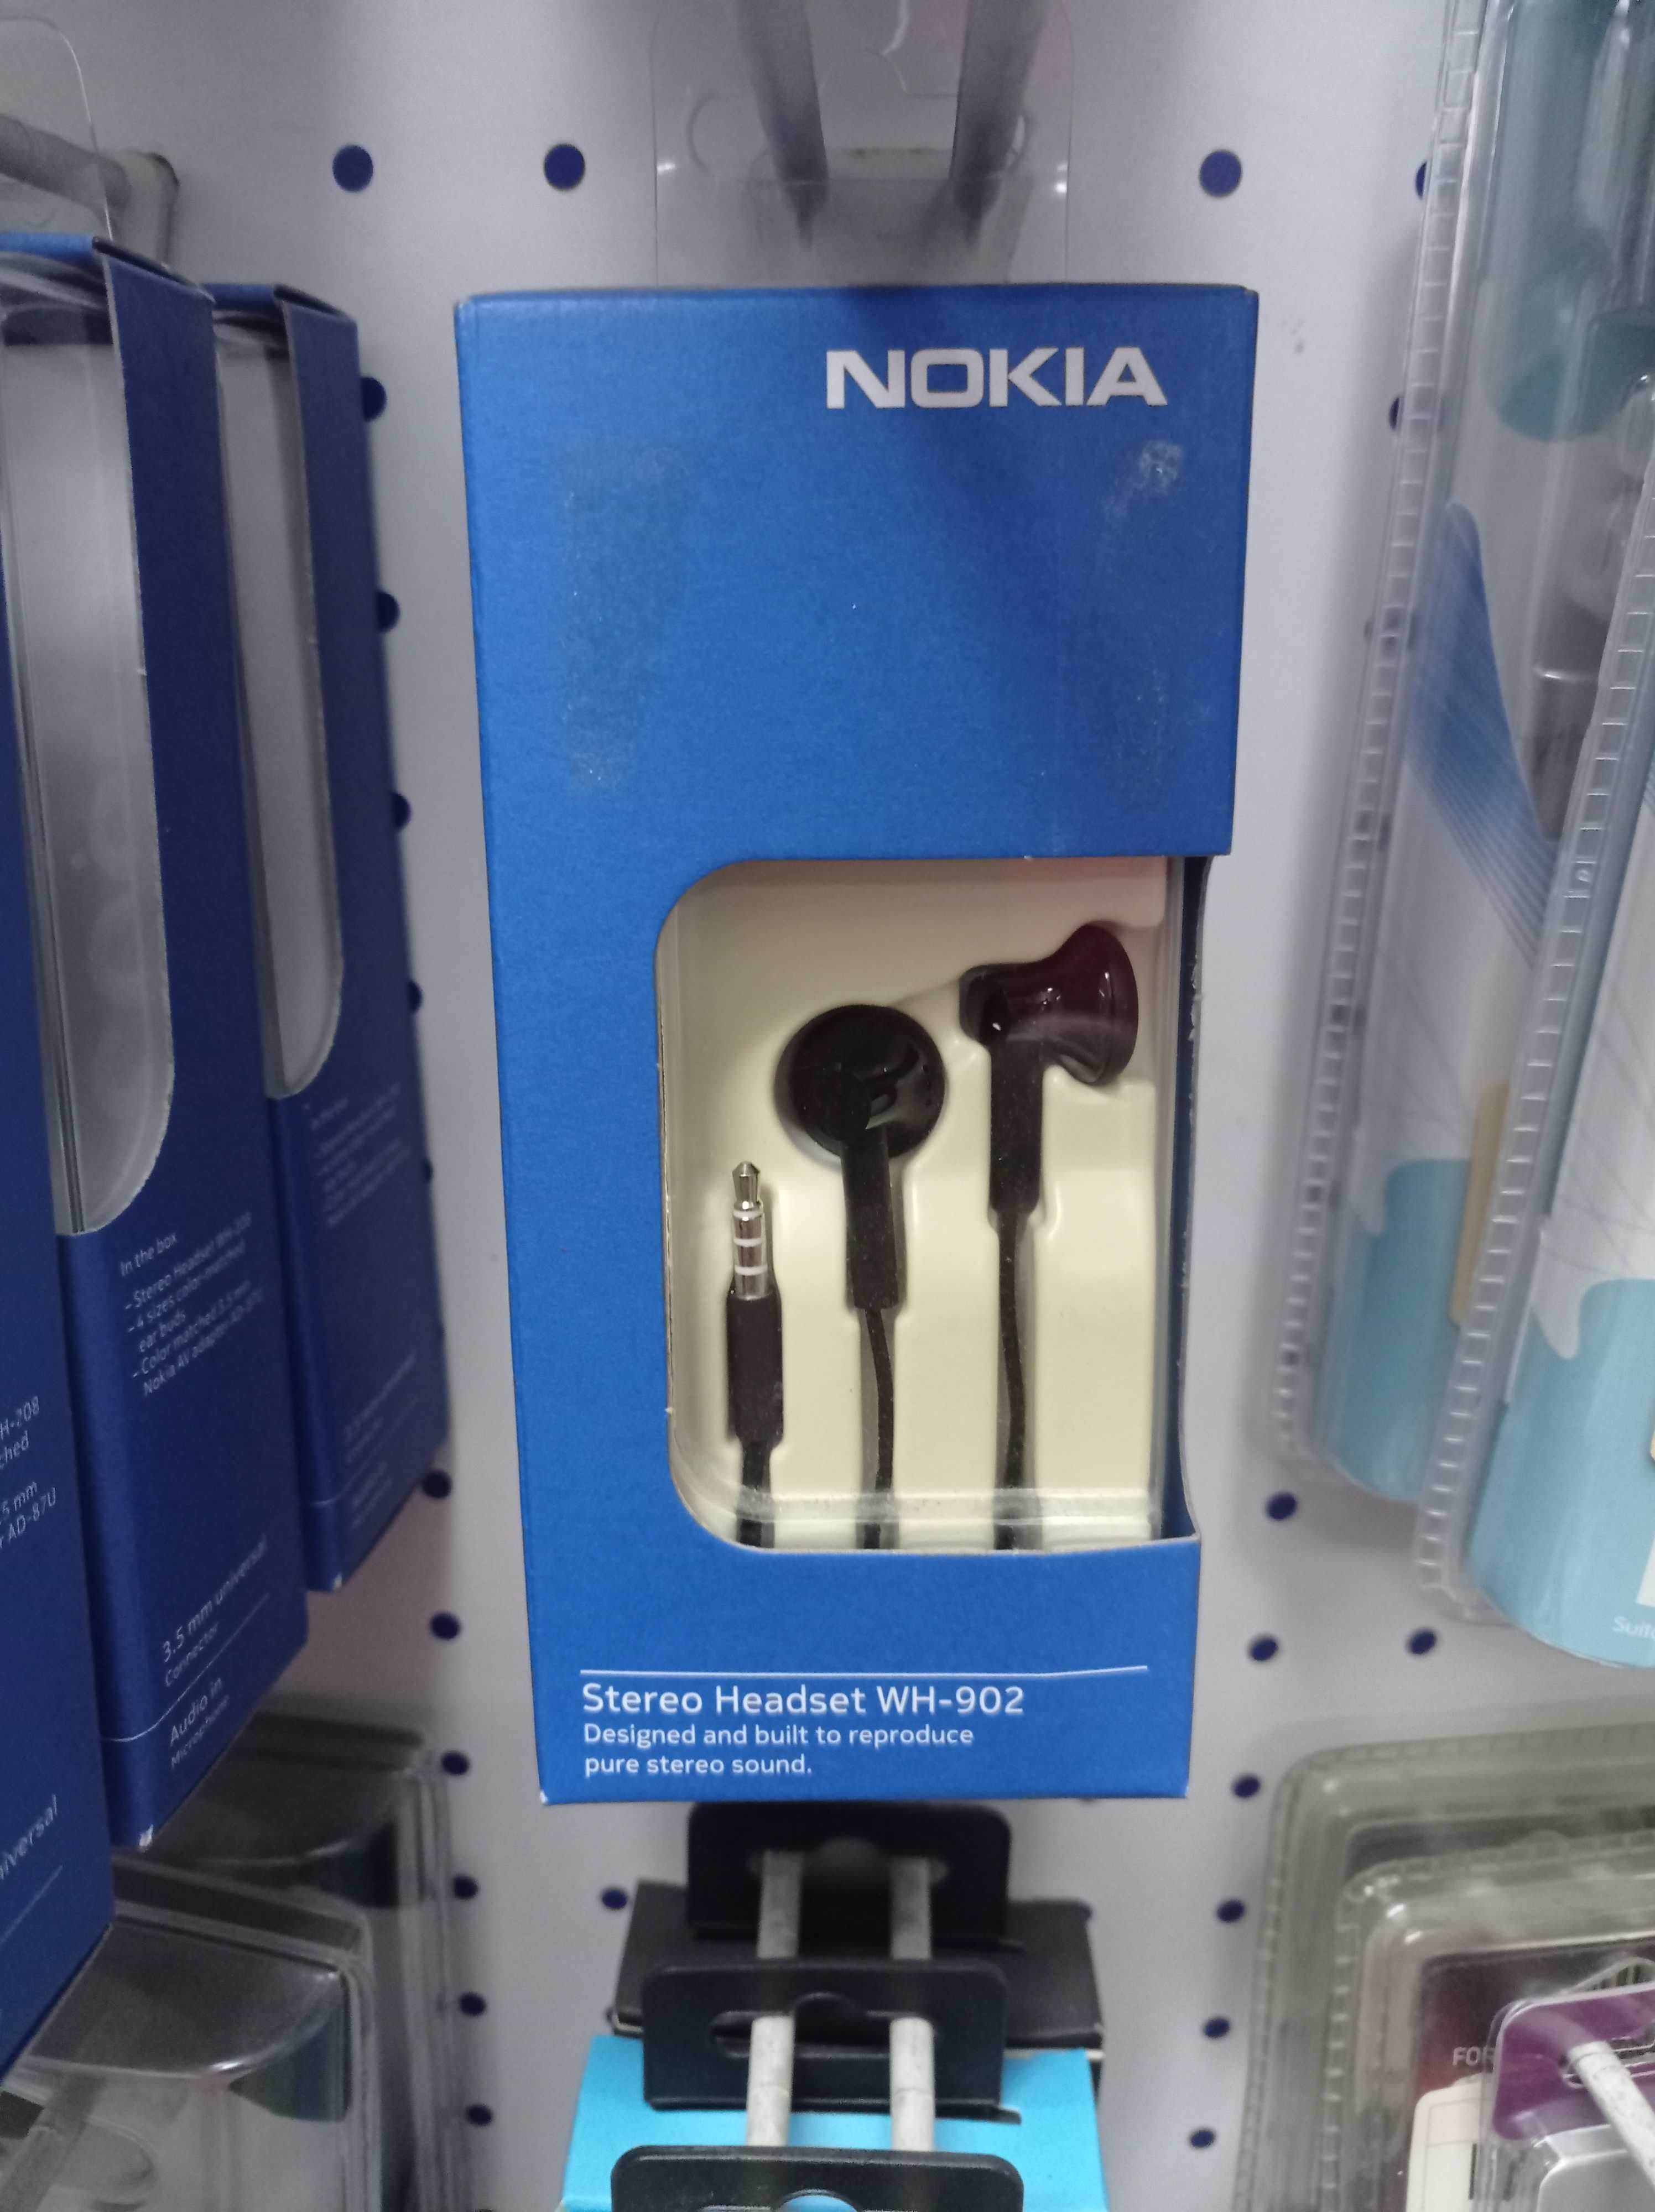 Lote de acessórios Nokia originais